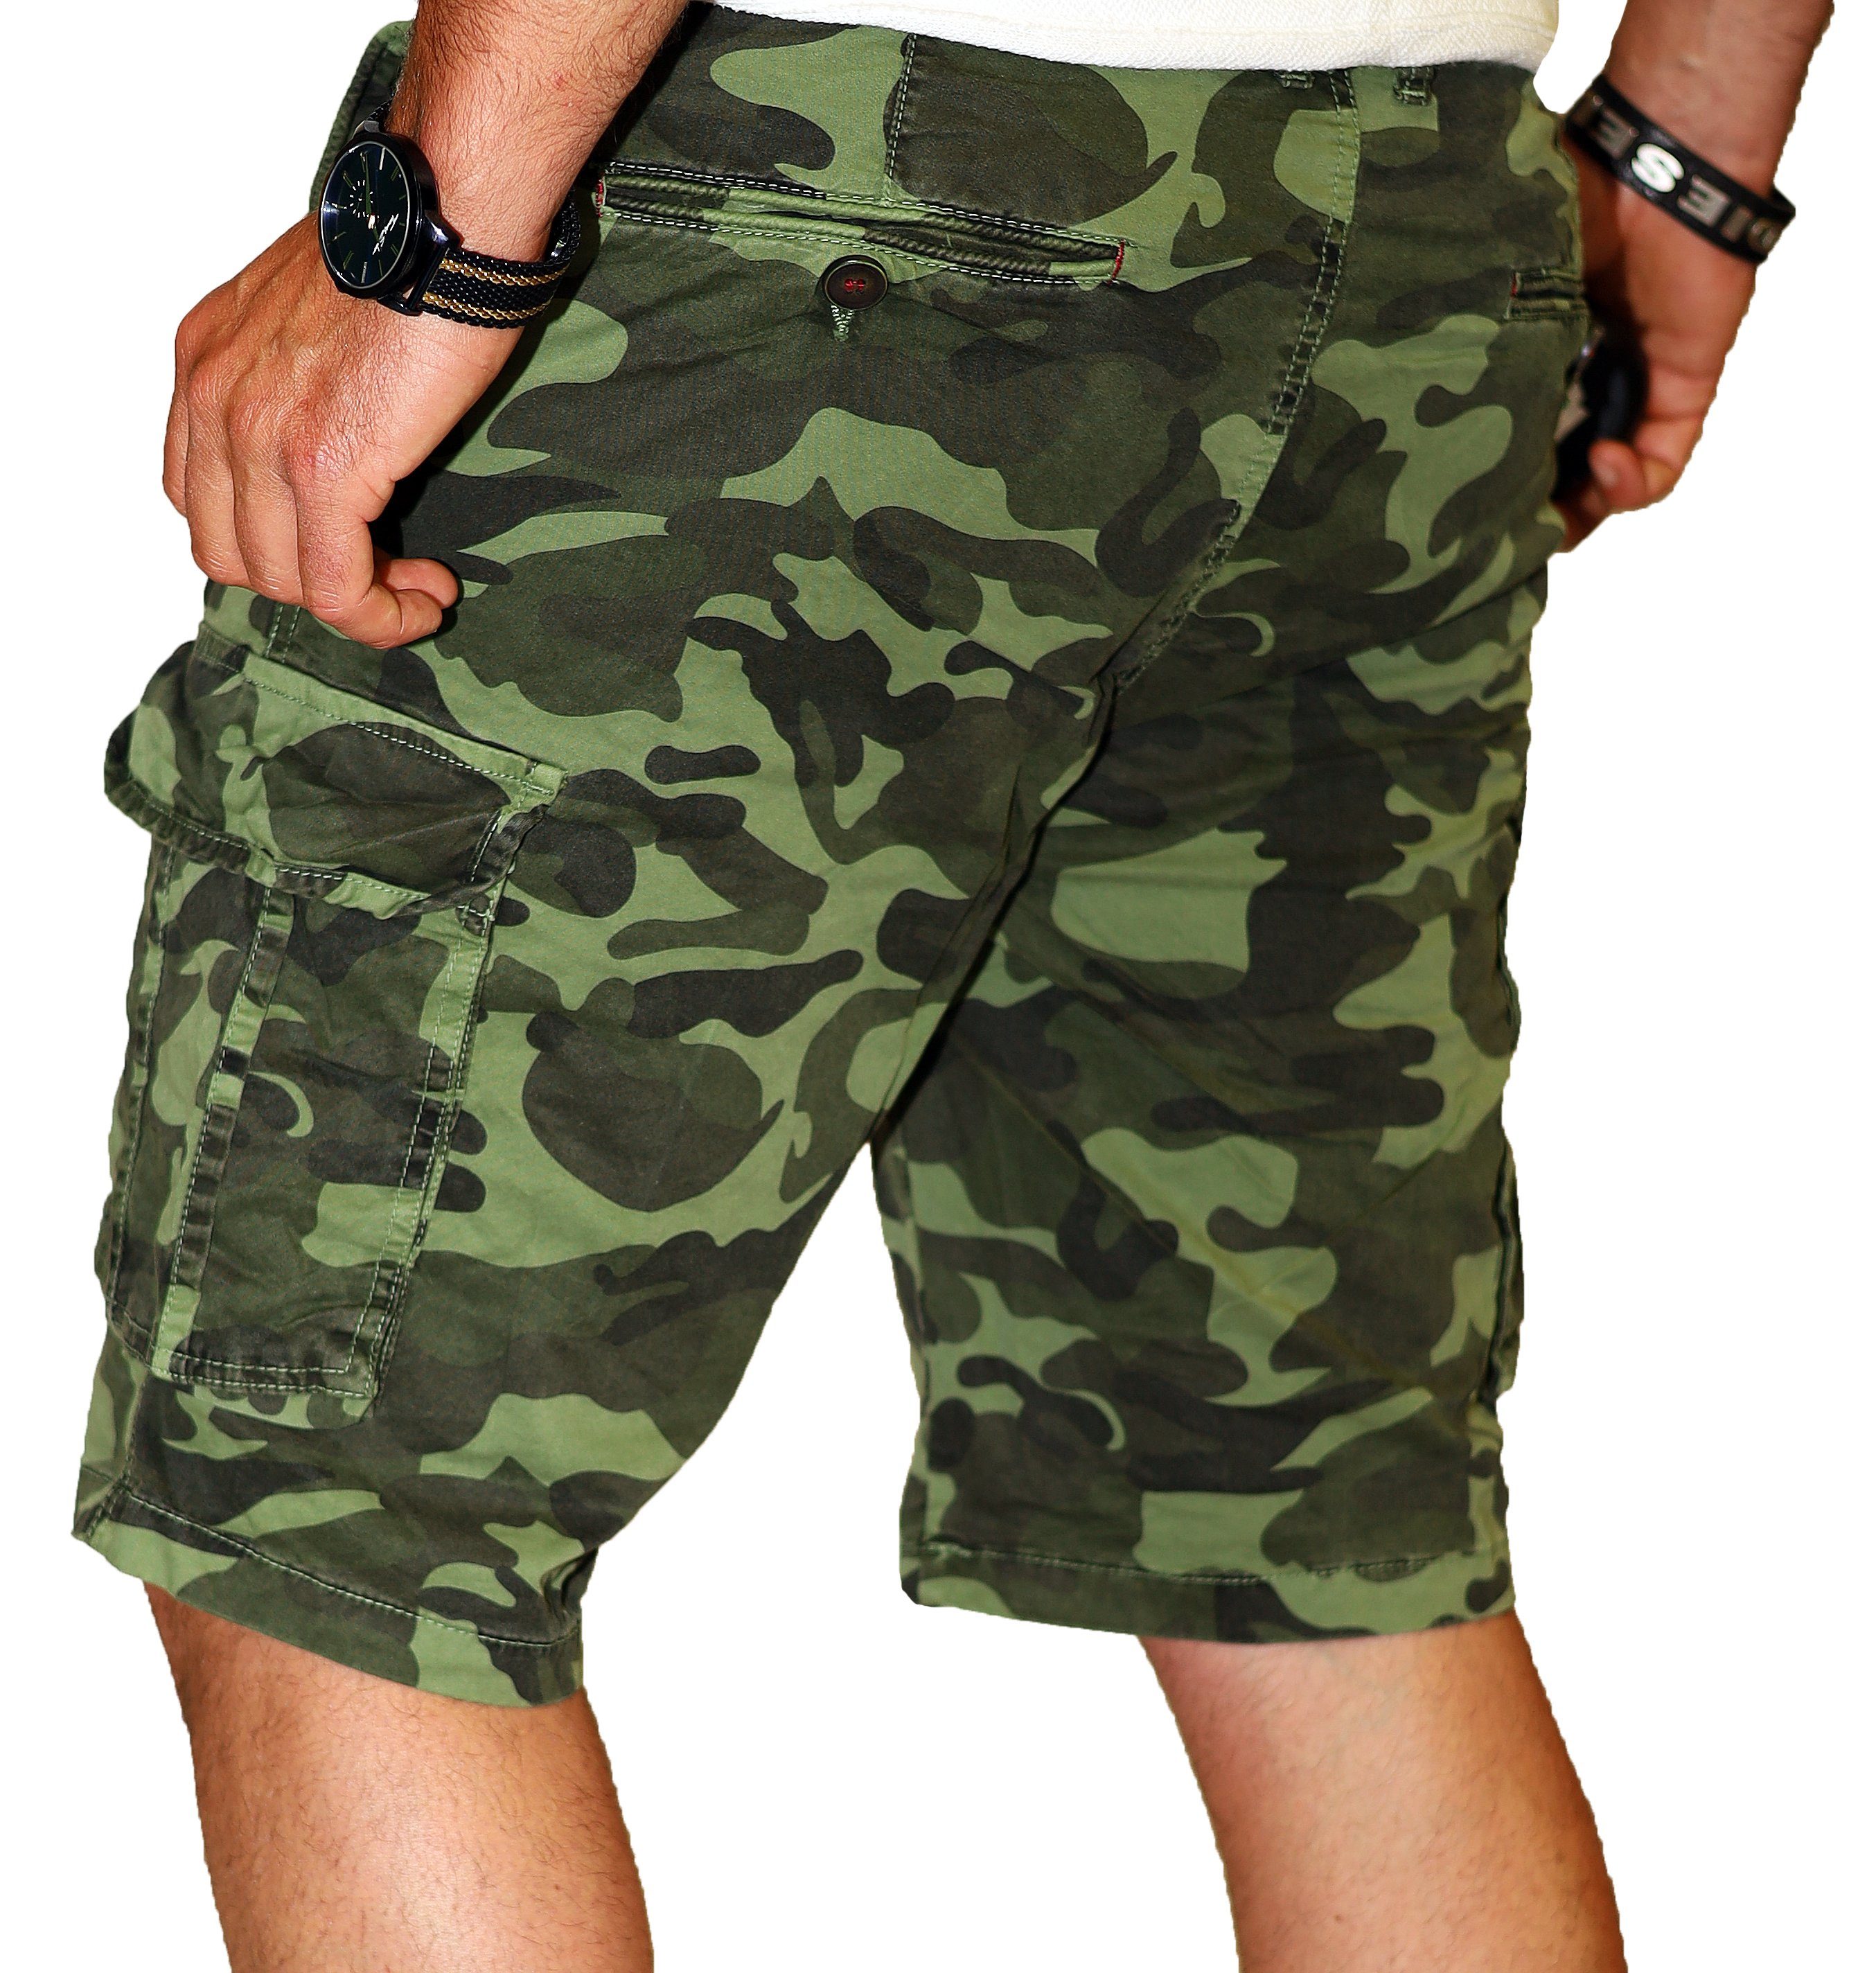 RMK Cargoshorts Herren Short Camouflage 100% Hose Bermuda Set Army Baumwolle Grün Tarn kurze in Tarnfarben, aus